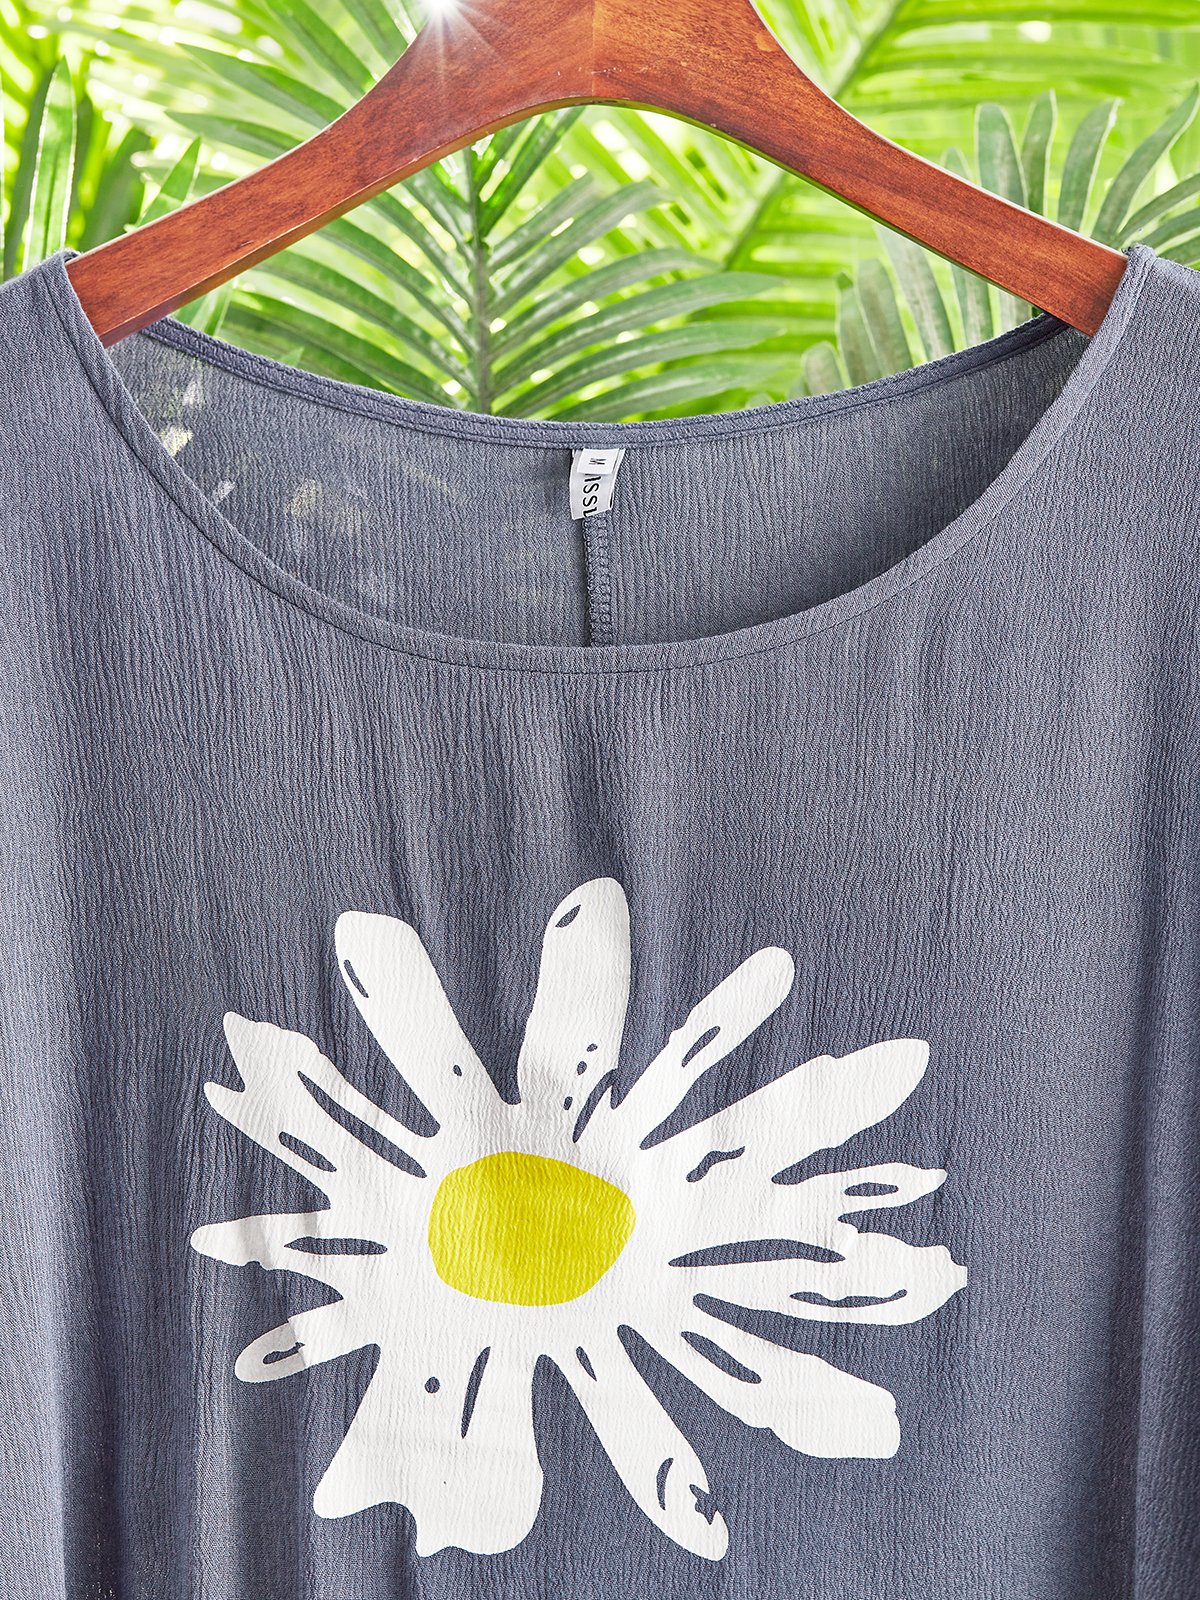 Vintage Cotton Blends Floral T-Shirts